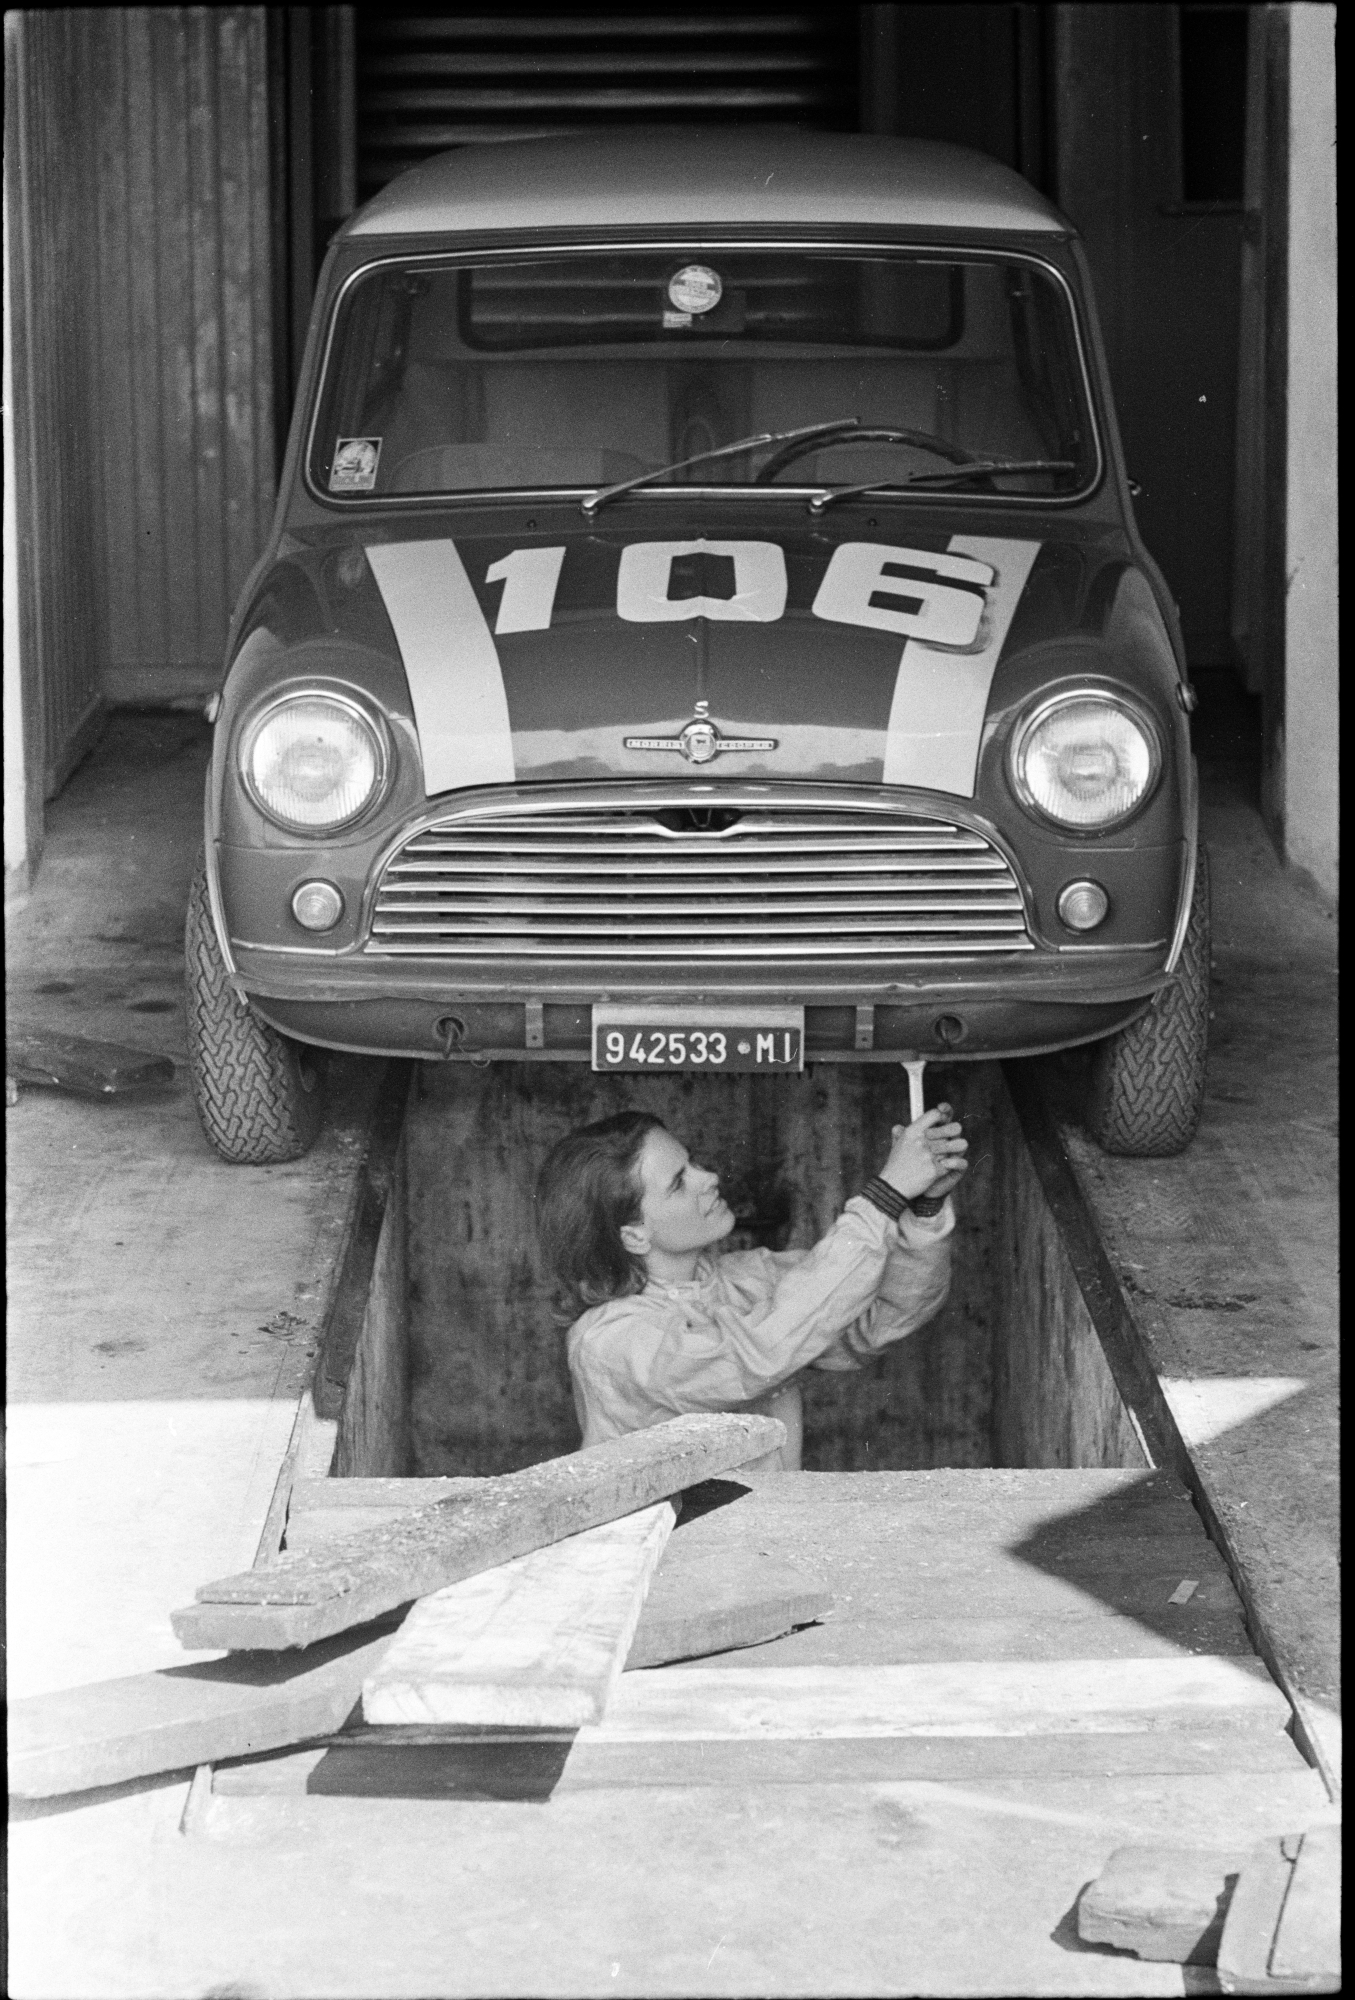 Donatella Odoardo mechanic in Monza, March 1965